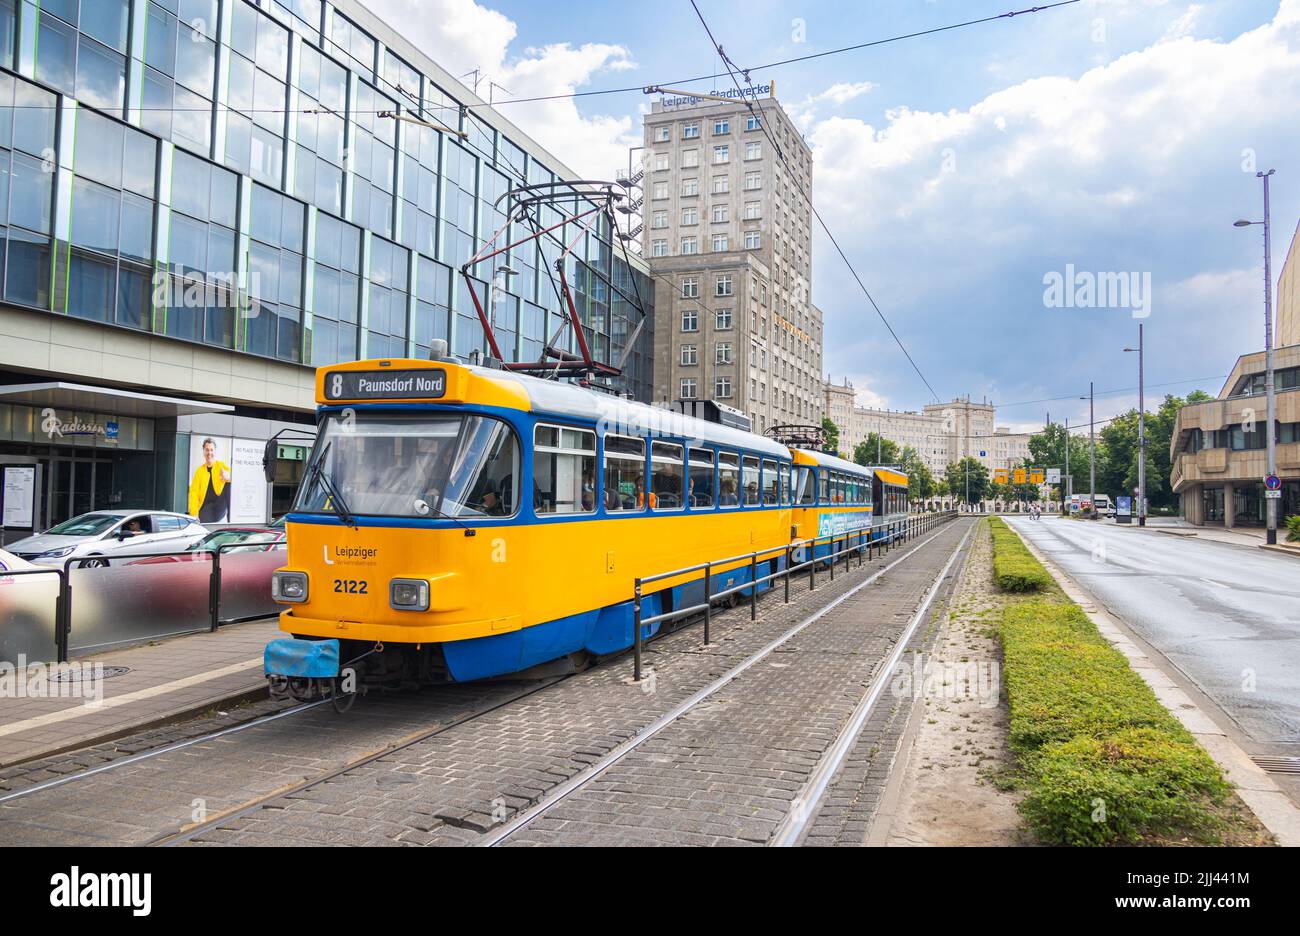 Leipzig, Allemagne - 25 juin 2022 : tramway de Leipzig à l'arrêt Augustusplatz. Le vieux tramway de la ville, aux couleurs bleu et jaune, s'arrête à un arrêt de tramway. Les gens obtiennent Banque D'Images